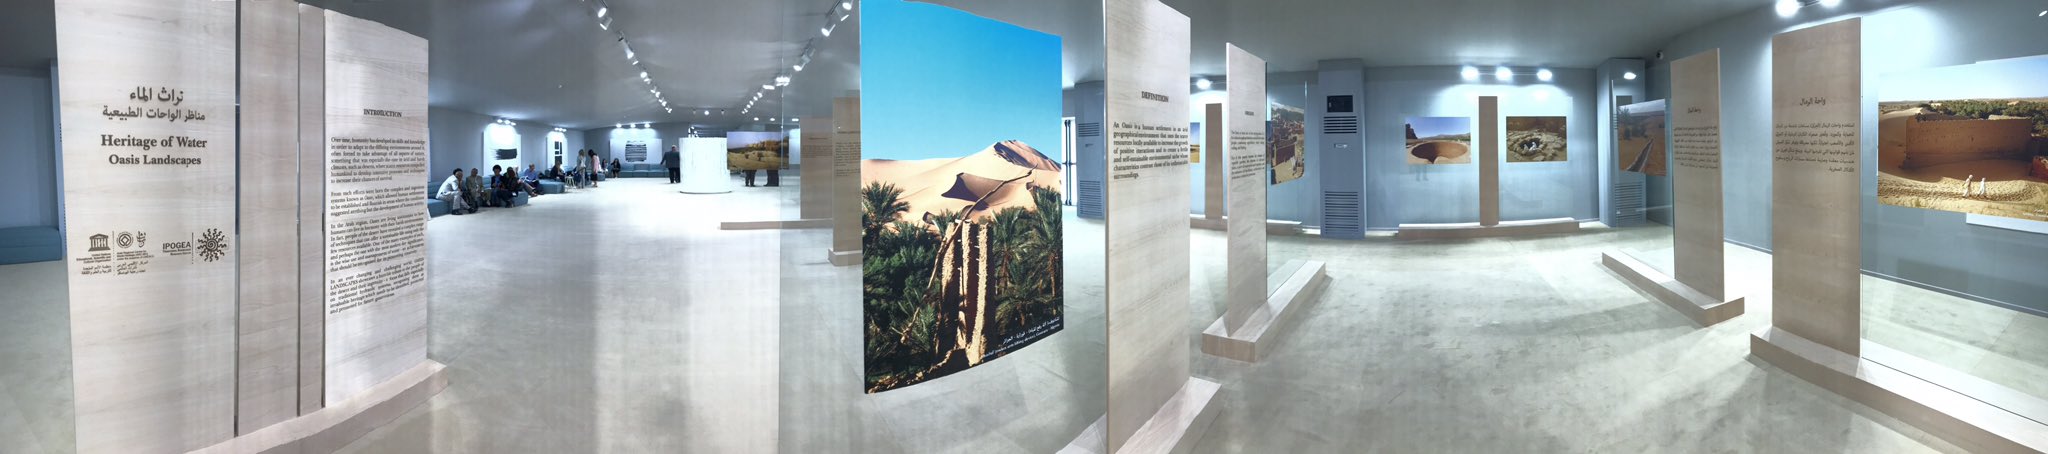 Exhibit-Oasis landscapes-IPOGEA Manama- Barein